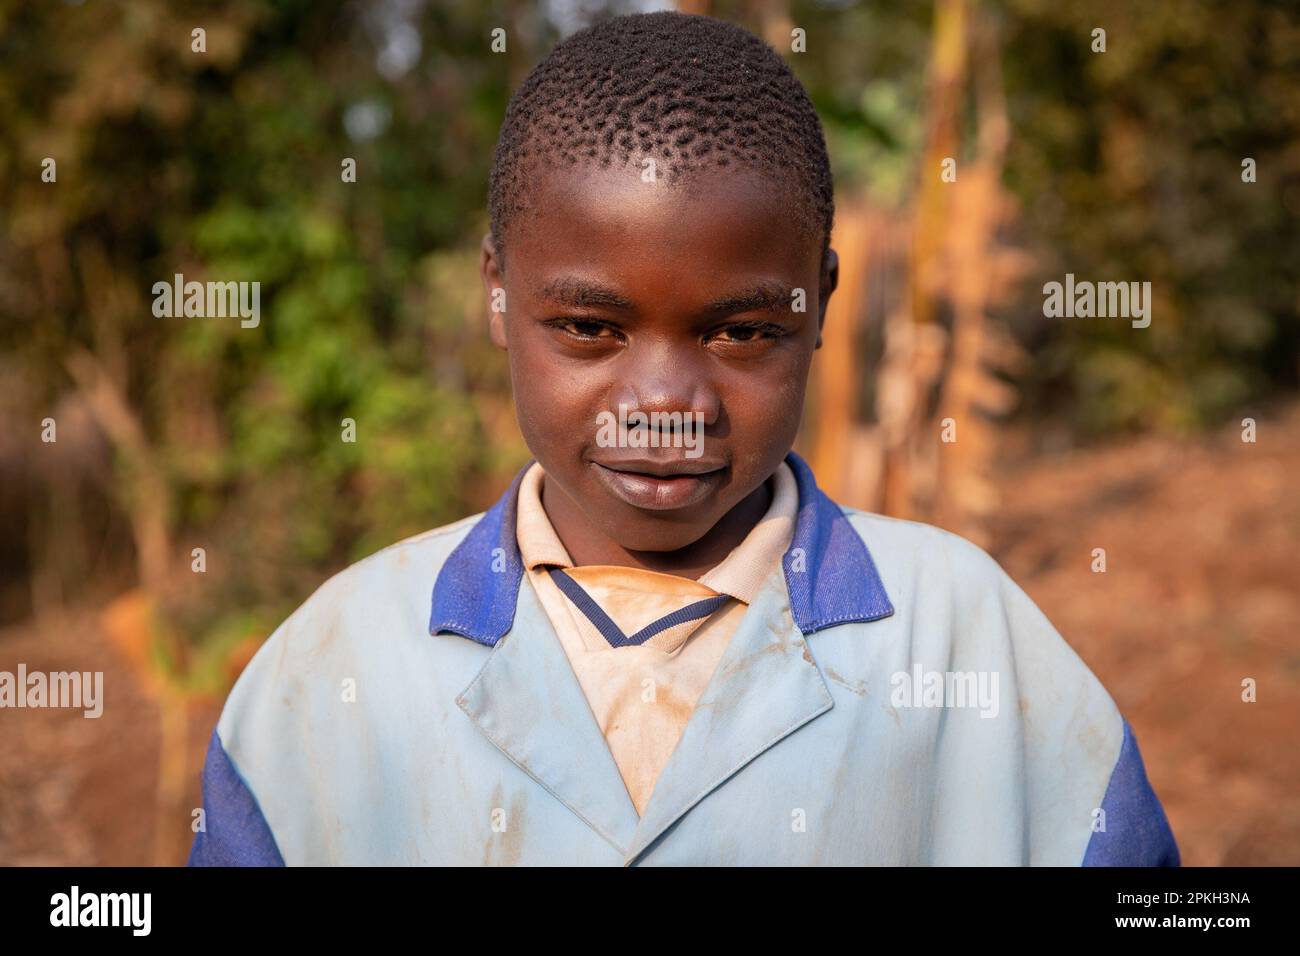 Ritratto di un bambino africano in un villaggio vestito con vestiti sporchi di terra rossa Foto Stock